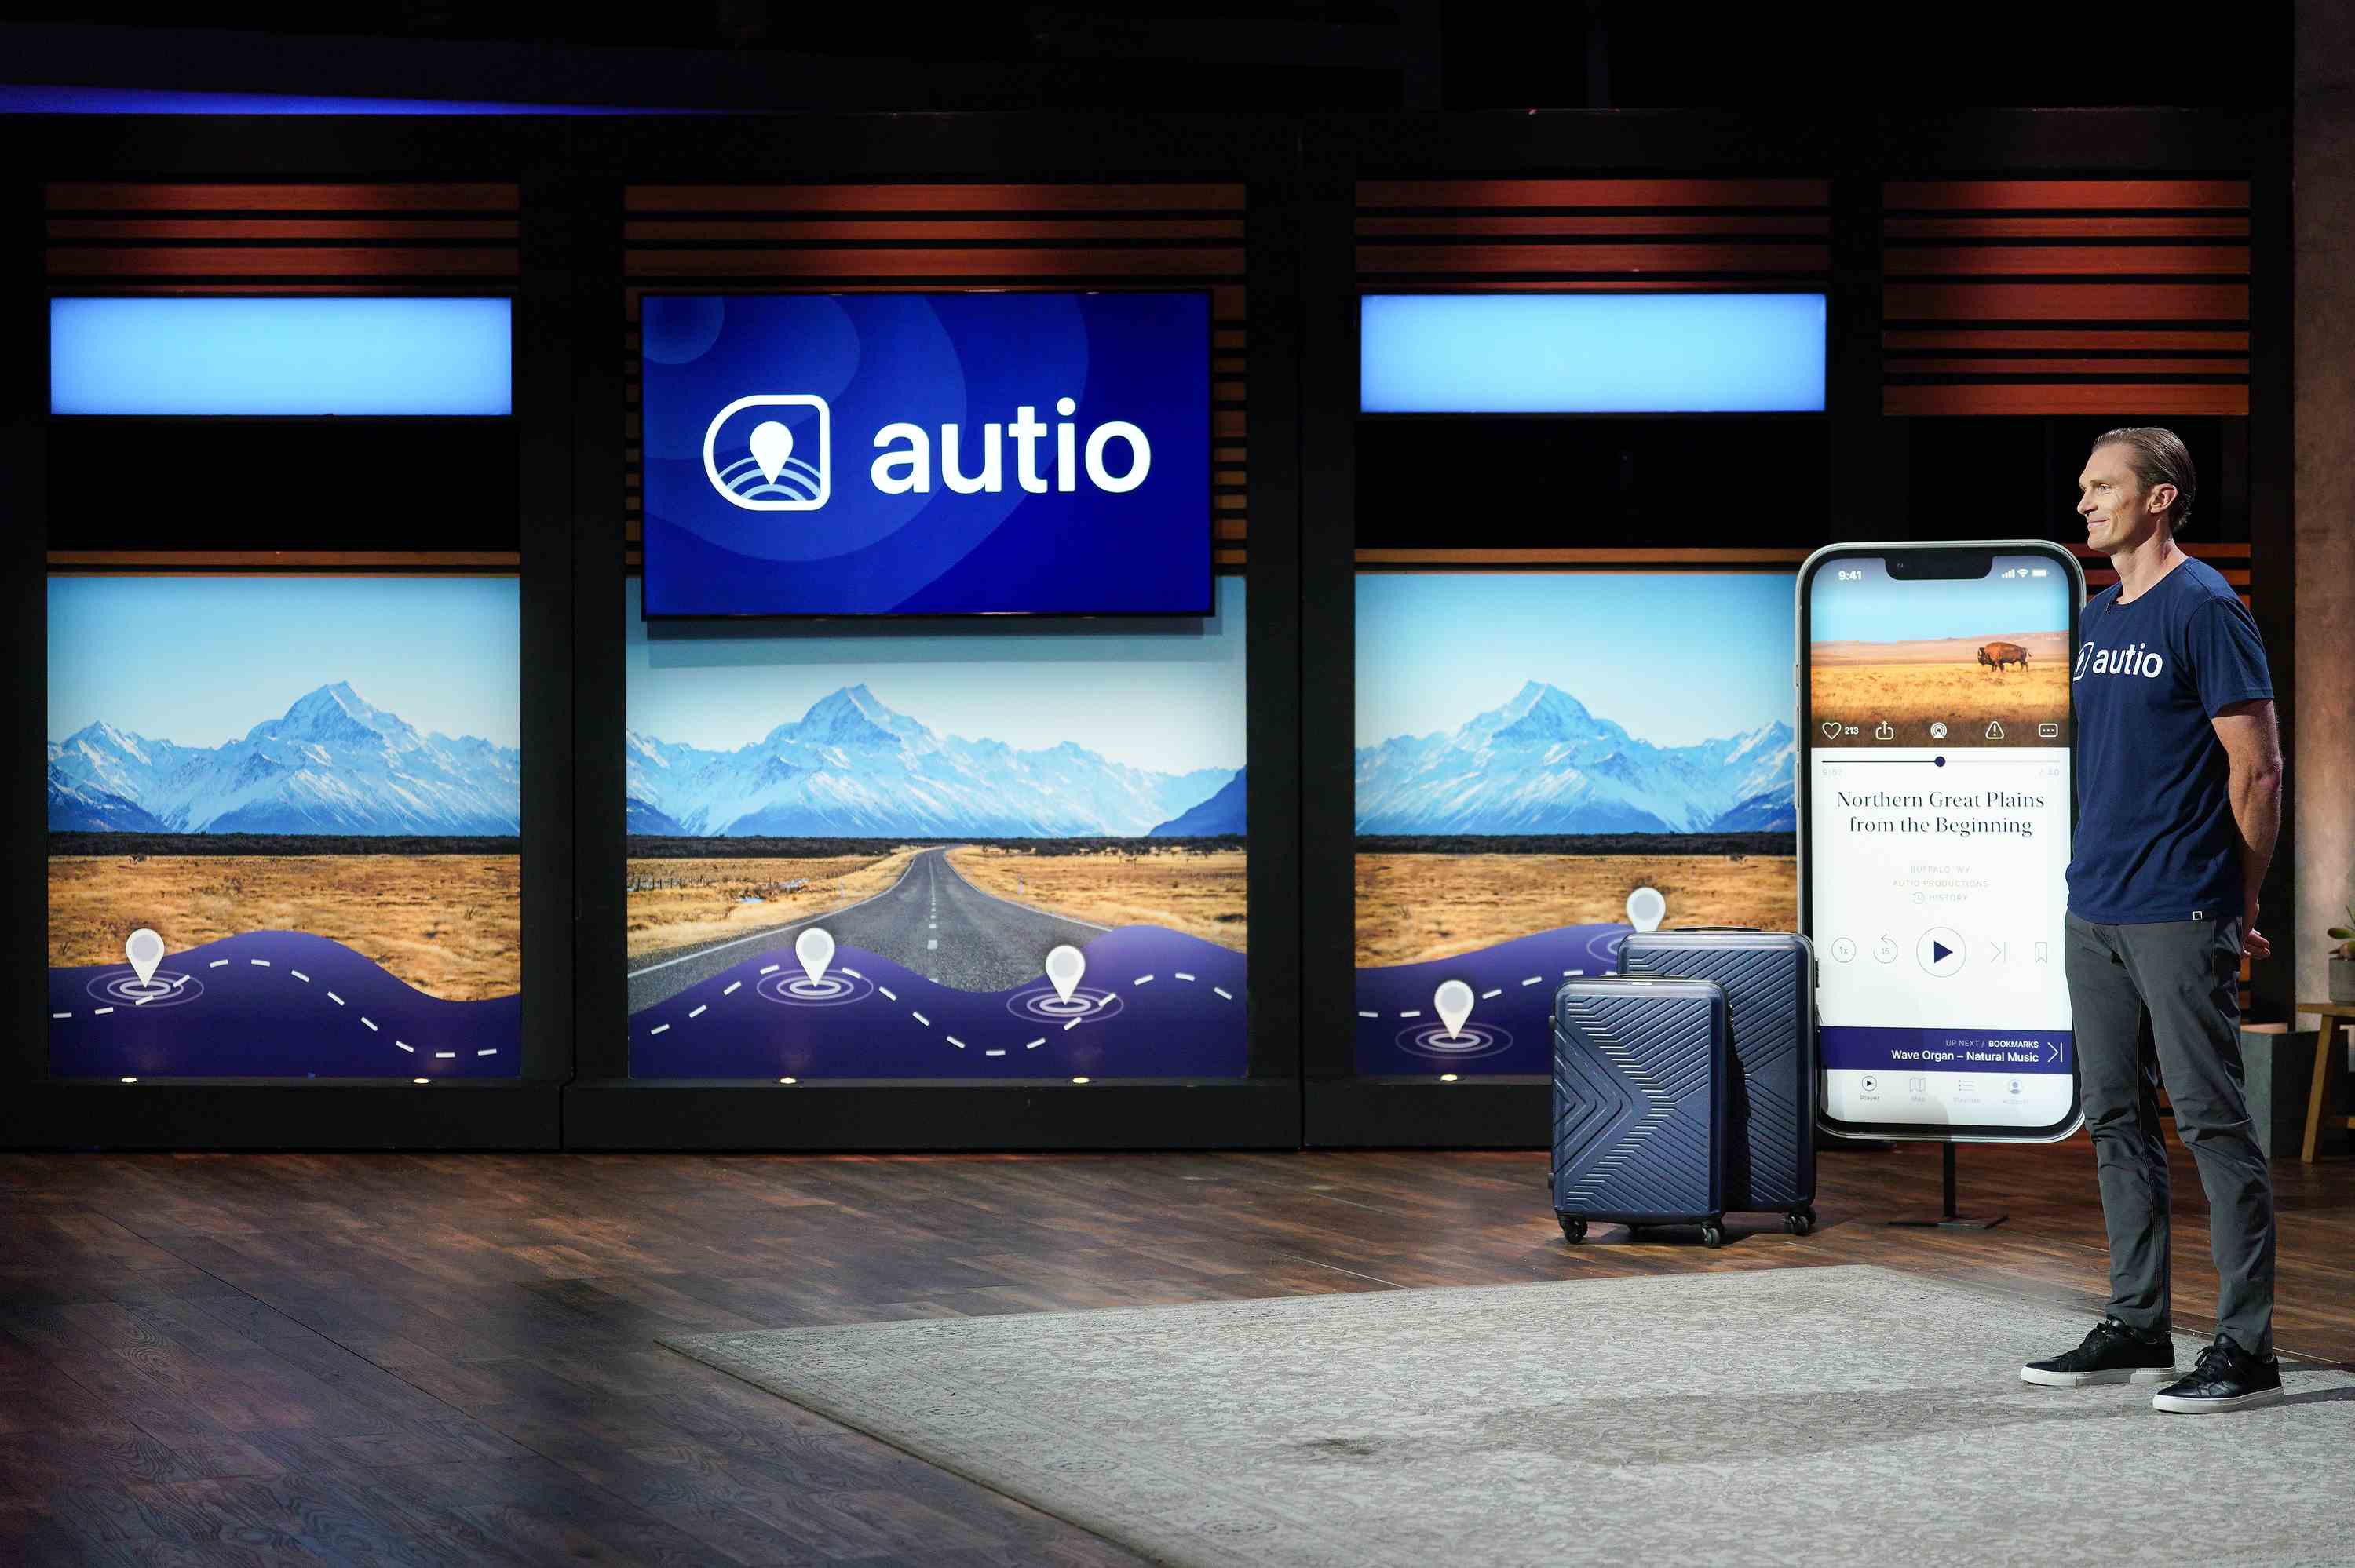 Kevin Costners standortbasierte Audio Storytelling App Autio bringt 59 Millionen US Dollar ein